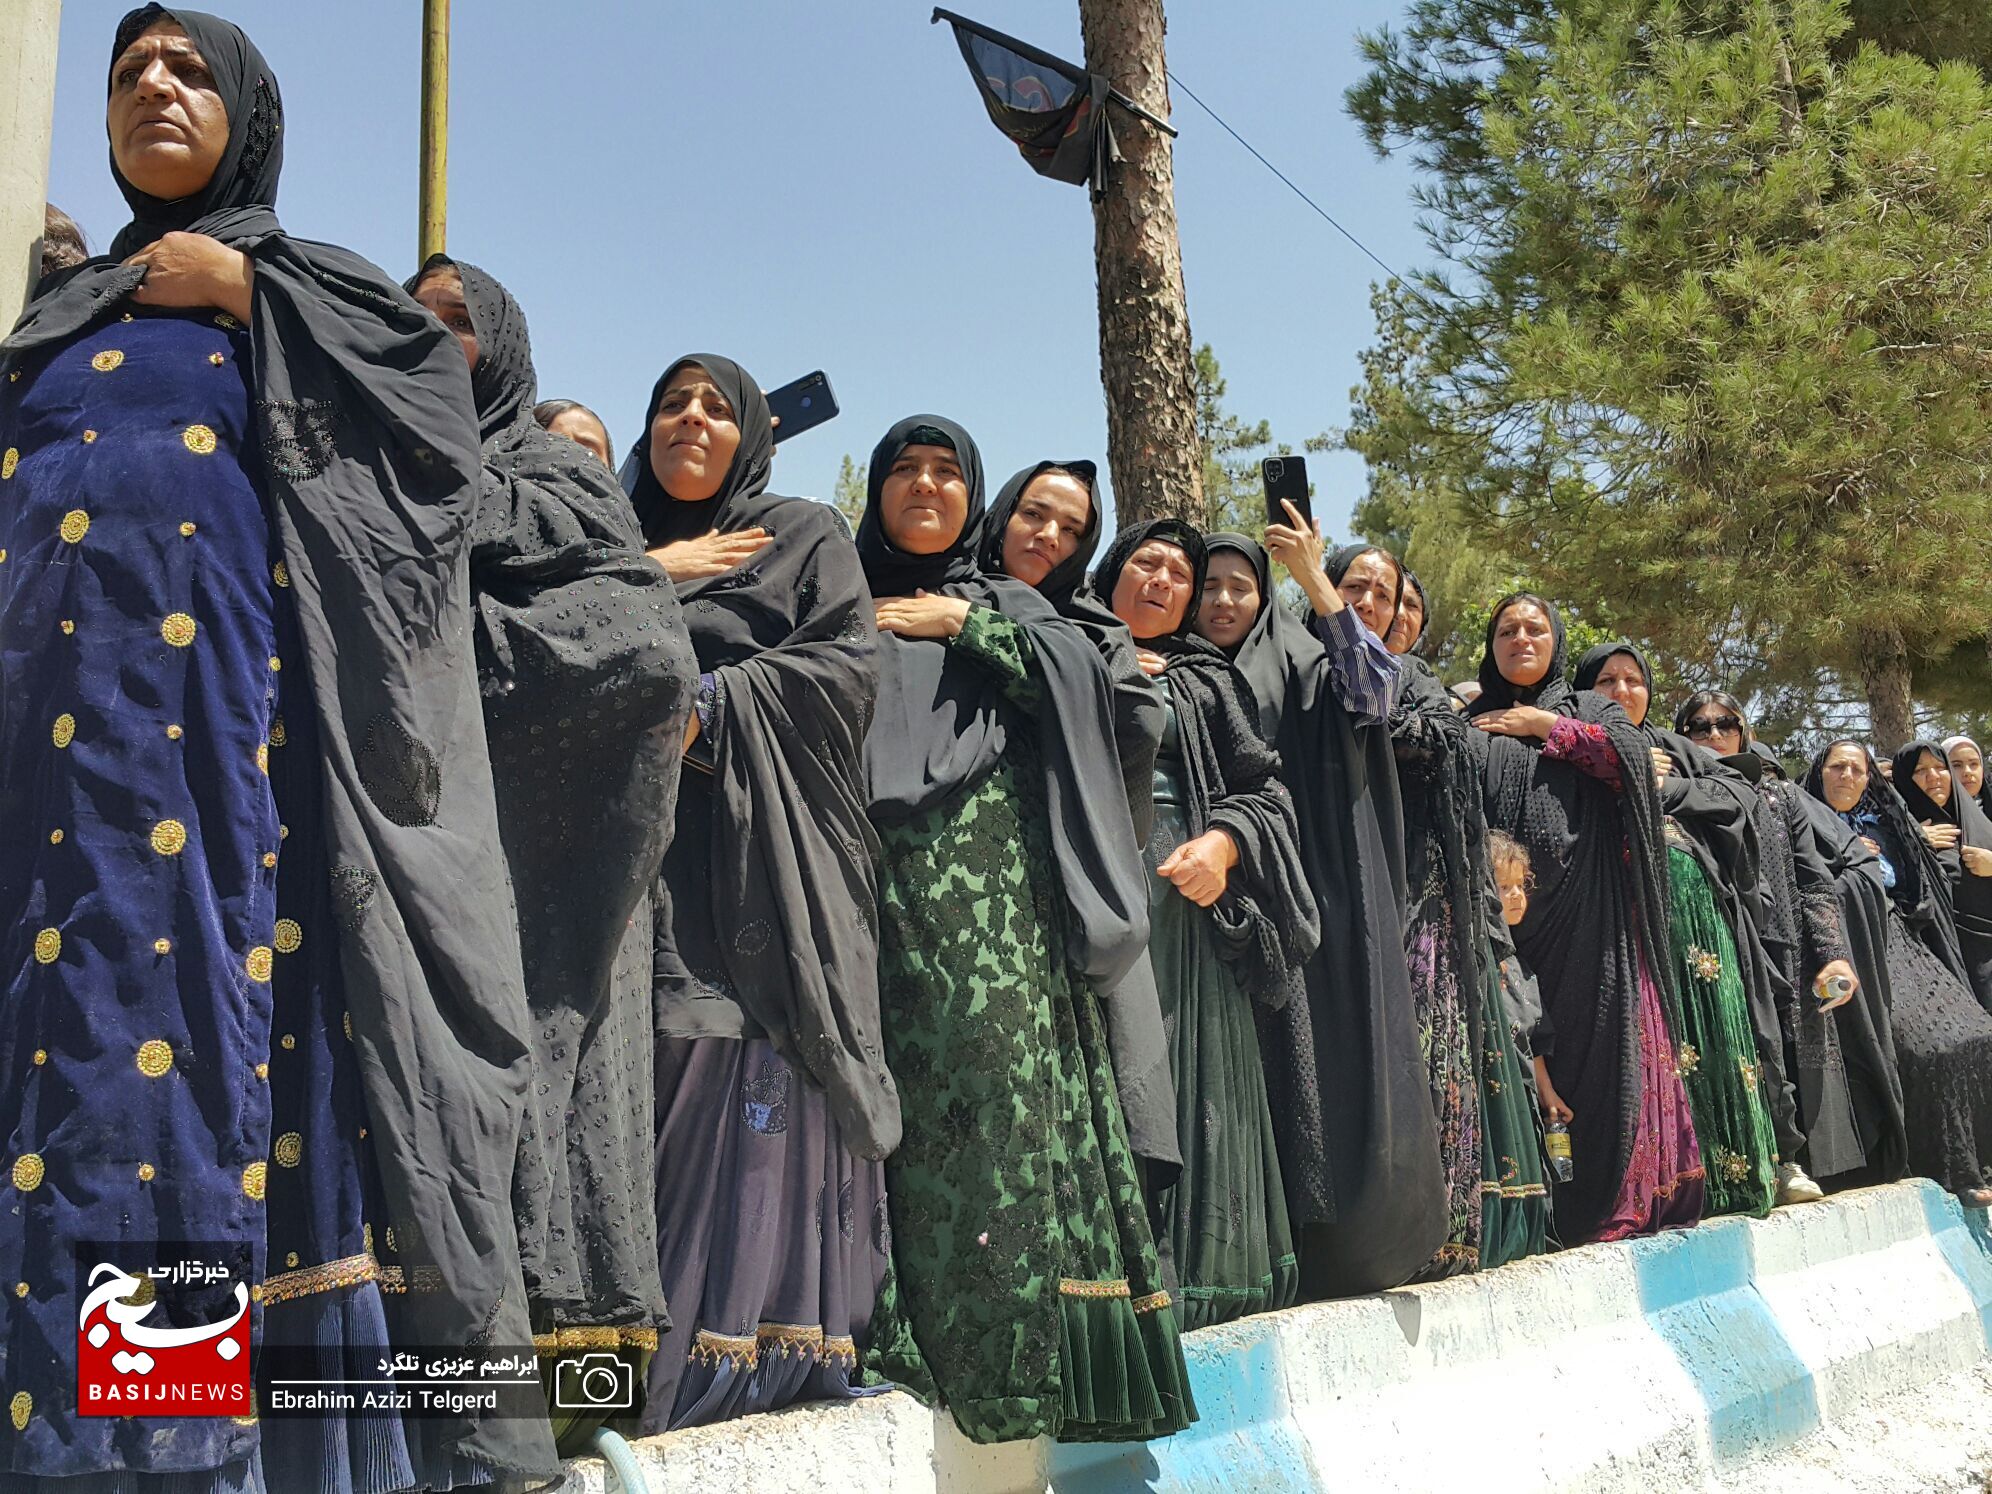 مراسم تشییع و خاکسپاری باشکوه شهید مدافع امنیت در یاسوج از دریچه دوربین خبرنگار بسیج + ( تصاویر )